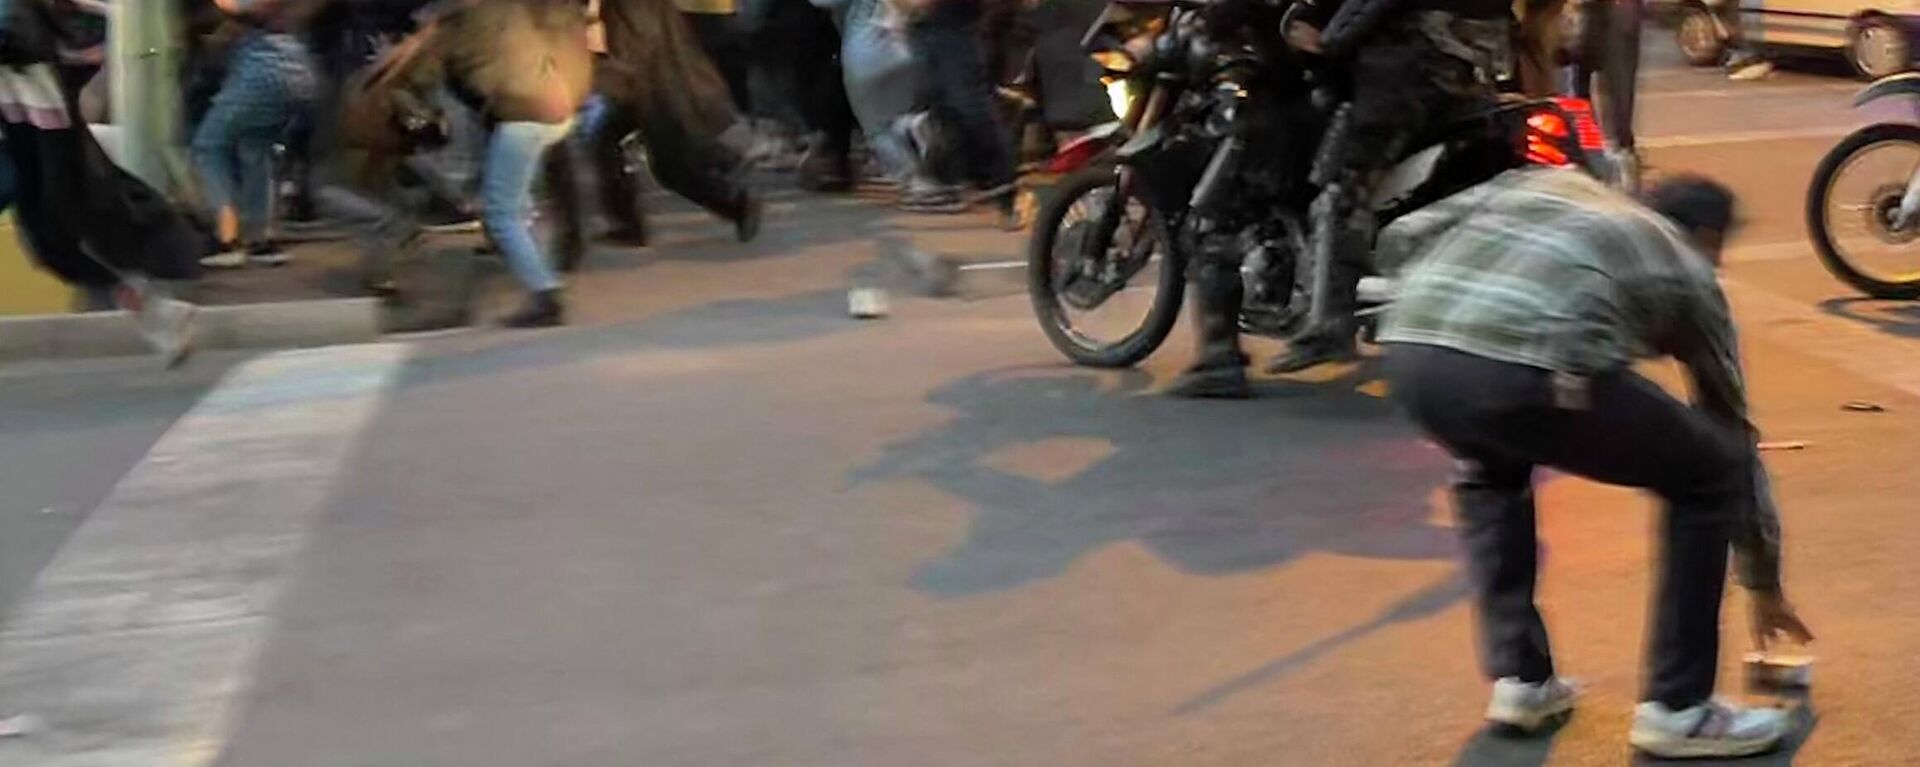 İran'da bir hafta önce Kürdistan eyaletinin Sakız kentinden başkent Tahran'ı ziyarete gelen Mahsa Emini'nin ahlak polisi tarafından saçını kurallara göre örtmediği gerekçesiyle gözaltına alınmasının ölümüyle sonuçlanmasıyla başlayan protestolar: Tahran'da protestocu gençleri motosiklet üzerinden coplayan polisler - Sputnik Türkiye, 1920, 20.09.2022